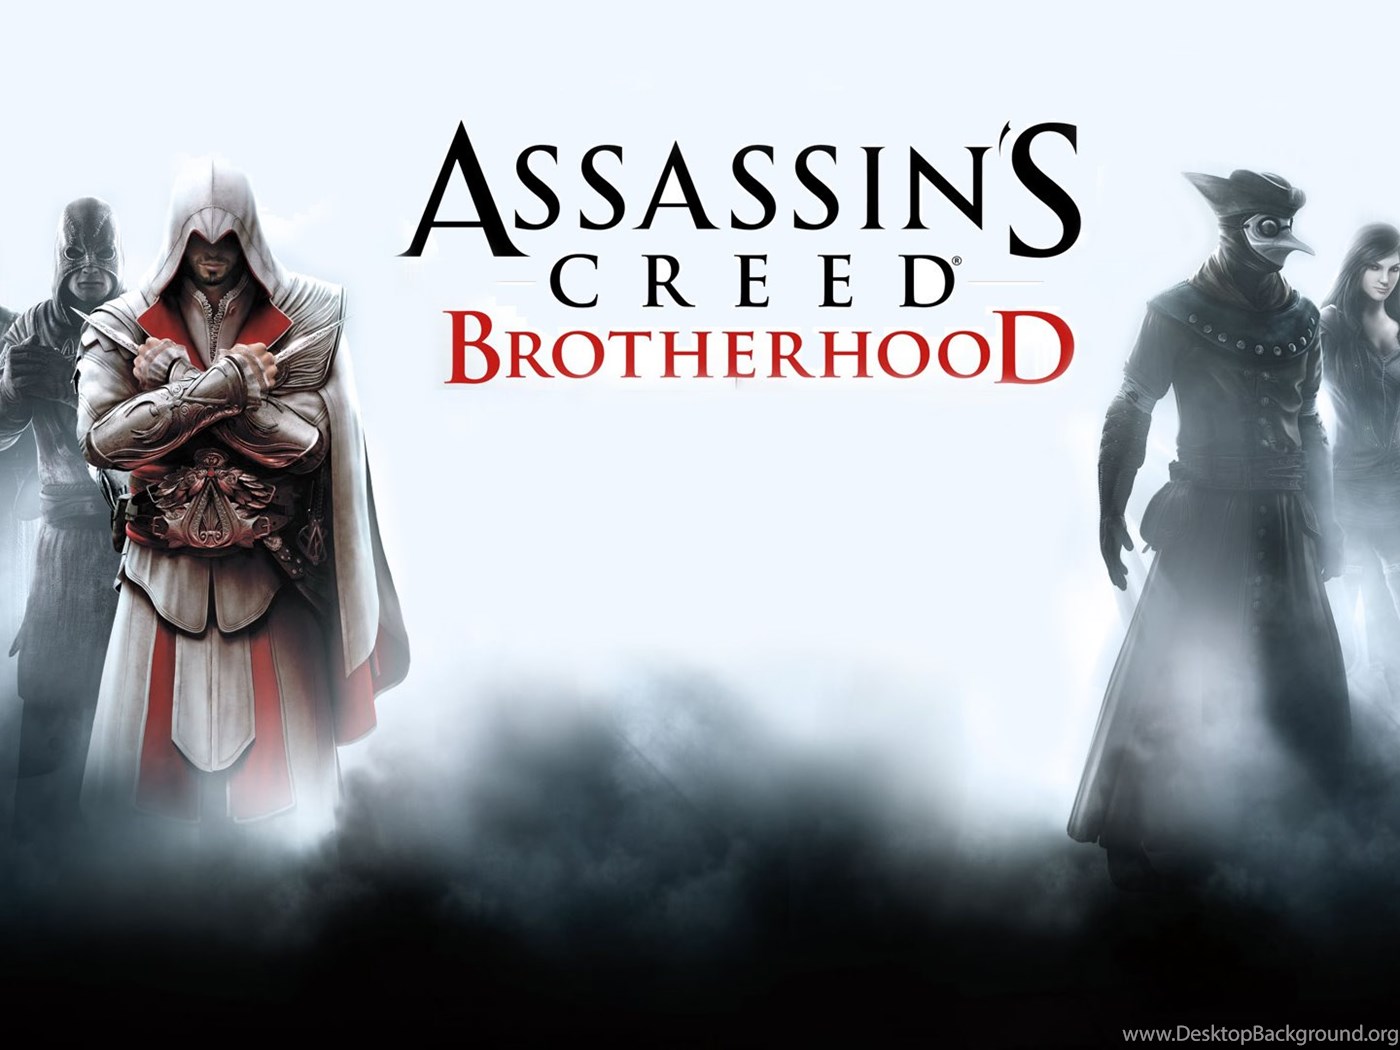 Игра ассасин крид братство. Ассасин Крид братство крови обложка. Assassin's Creed: Brotherhood. Assassin's Creed братство крови обложка. Ассасин Крид бразерхуд обложка.